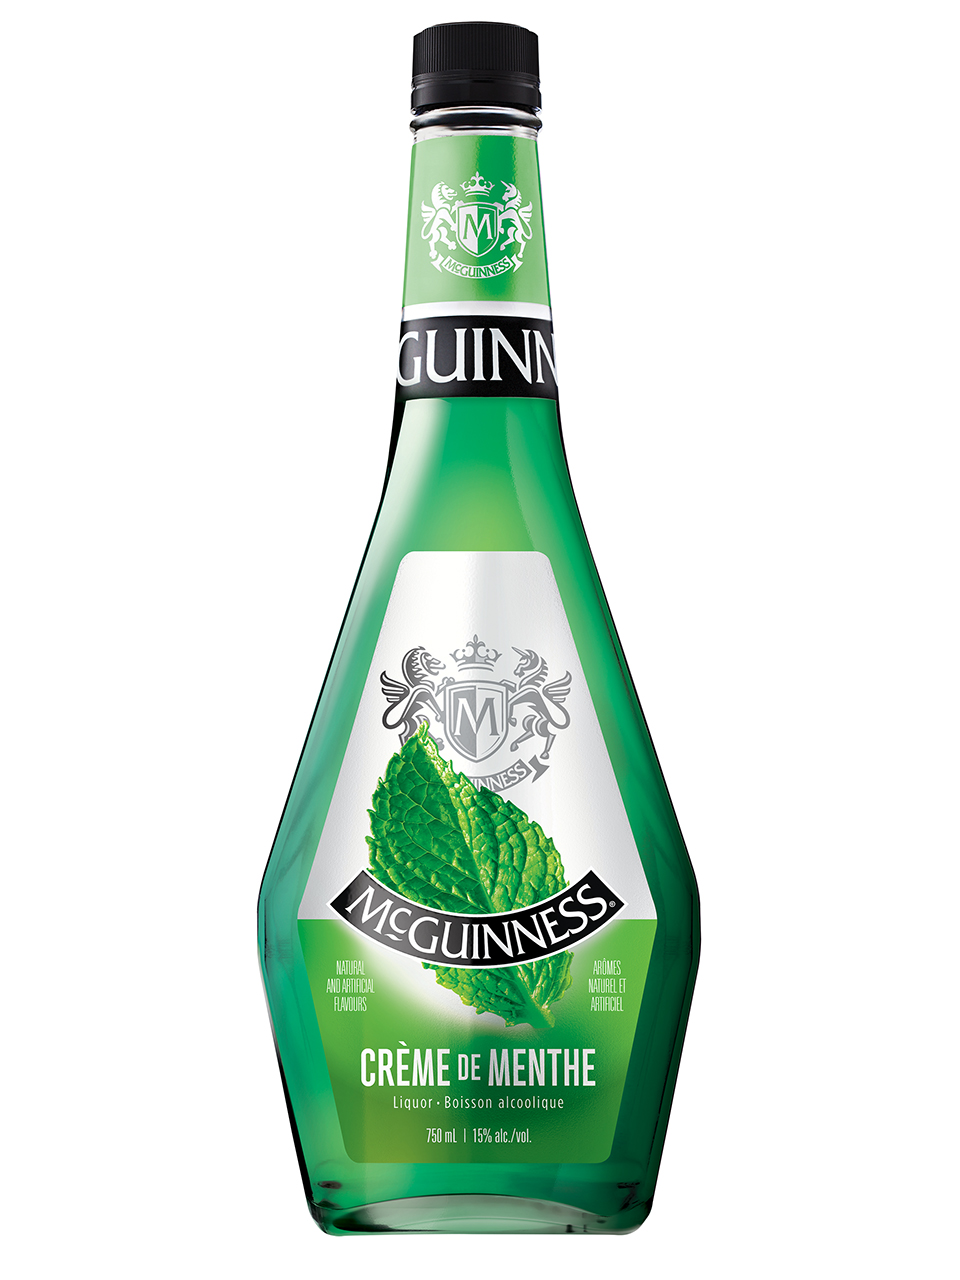 McGuinness Creme de Menthe Green